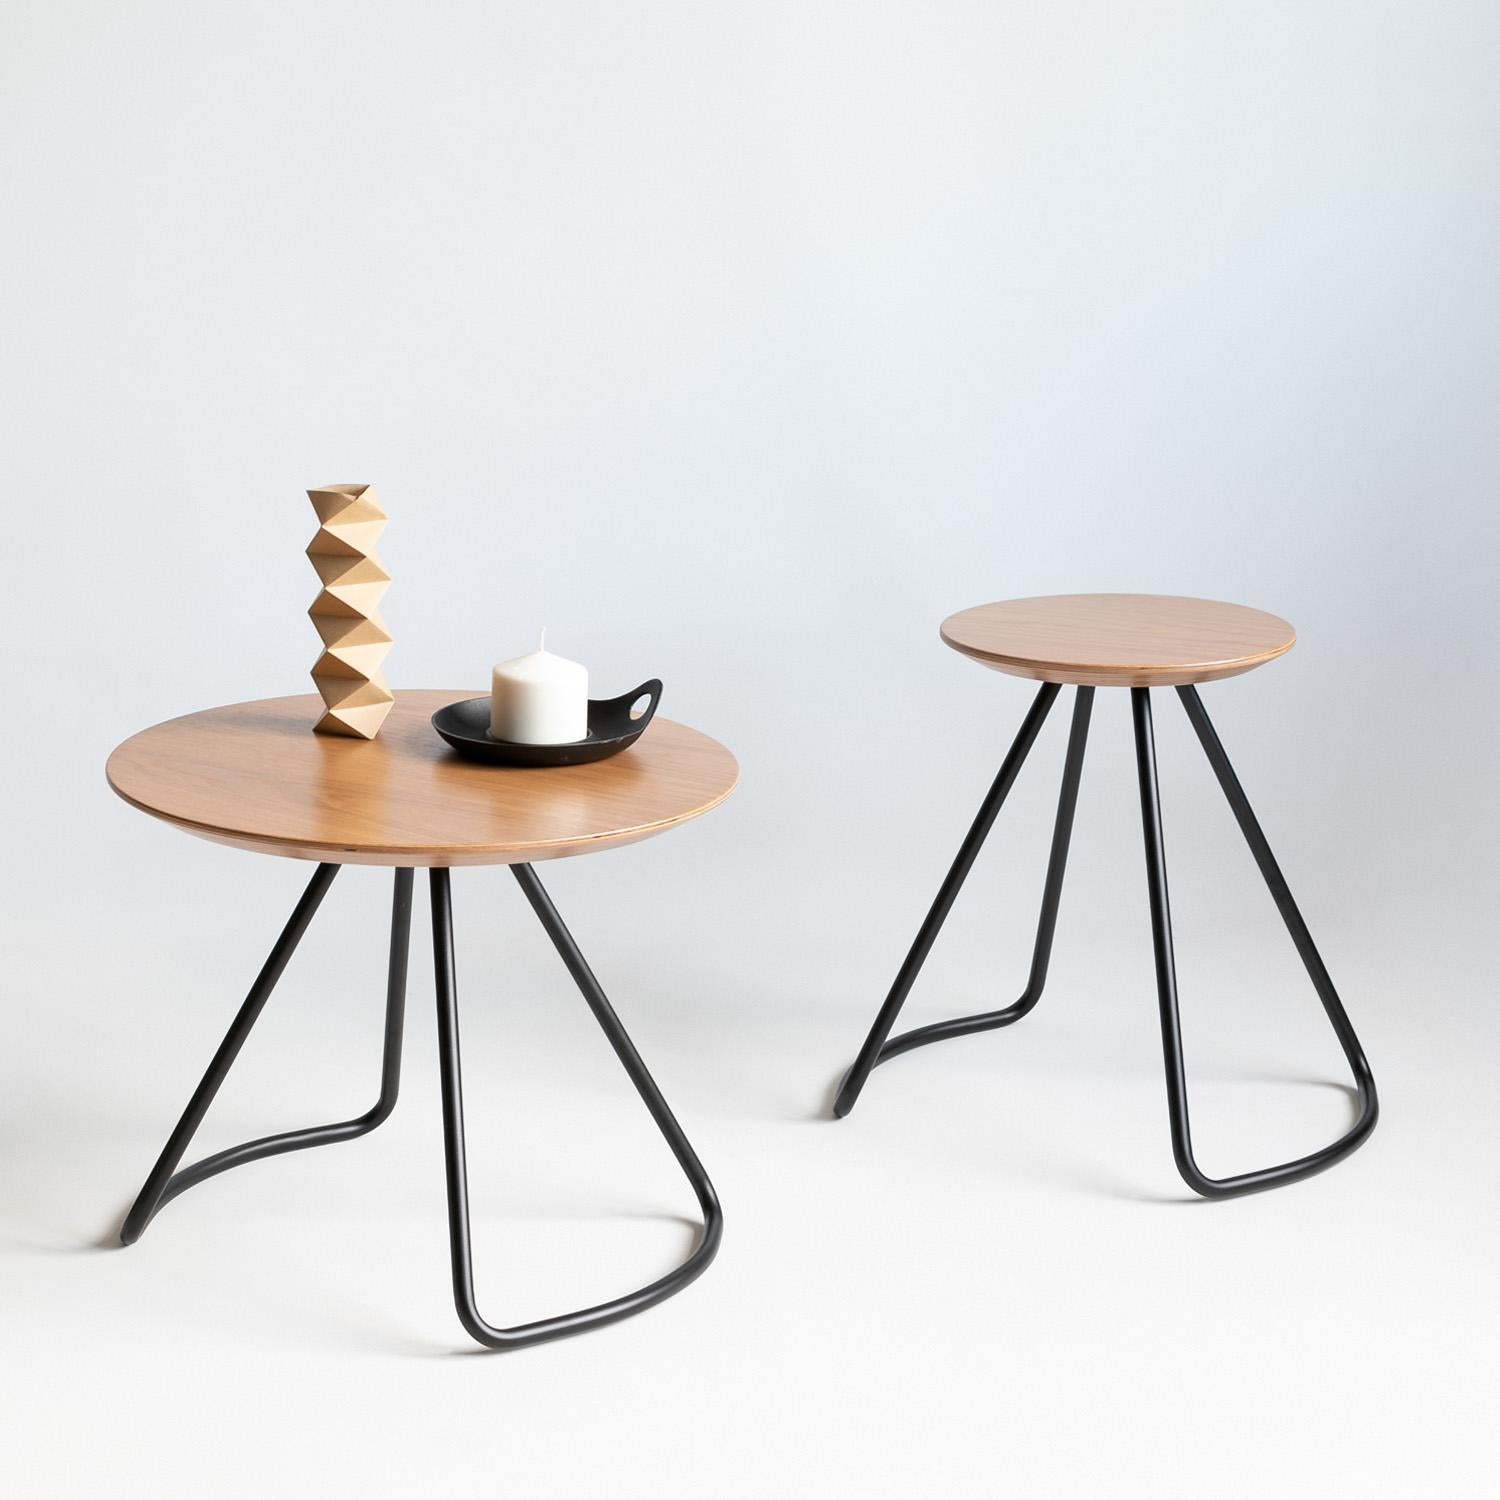 Le tabouret/table Sama fait partie de la collection Sama, qui offre une fonctionnalité grâce à des formes simples, mais frappantes et sculpturales qui ajoutent une touche unique et élégante à son environnement. Le tabouret/table Sama est un